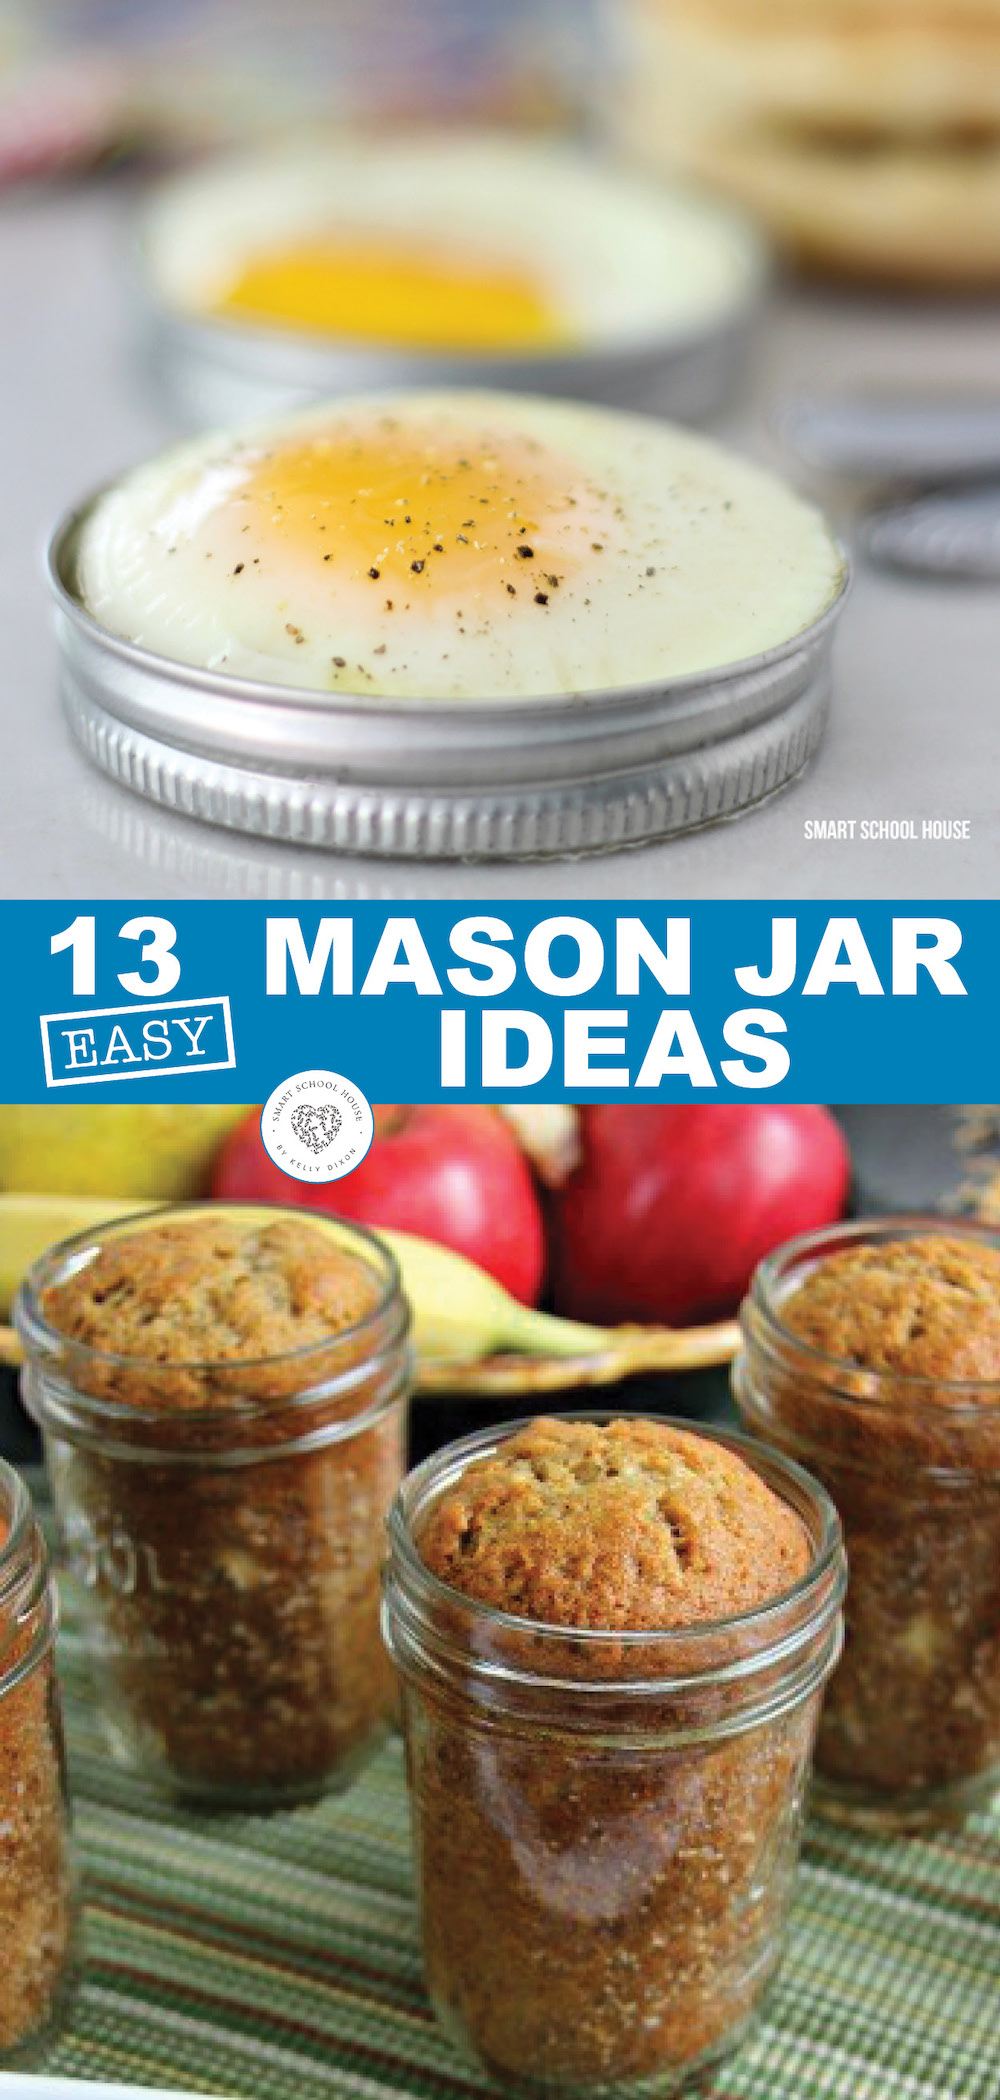 13 Easy Mason Jar Ideas